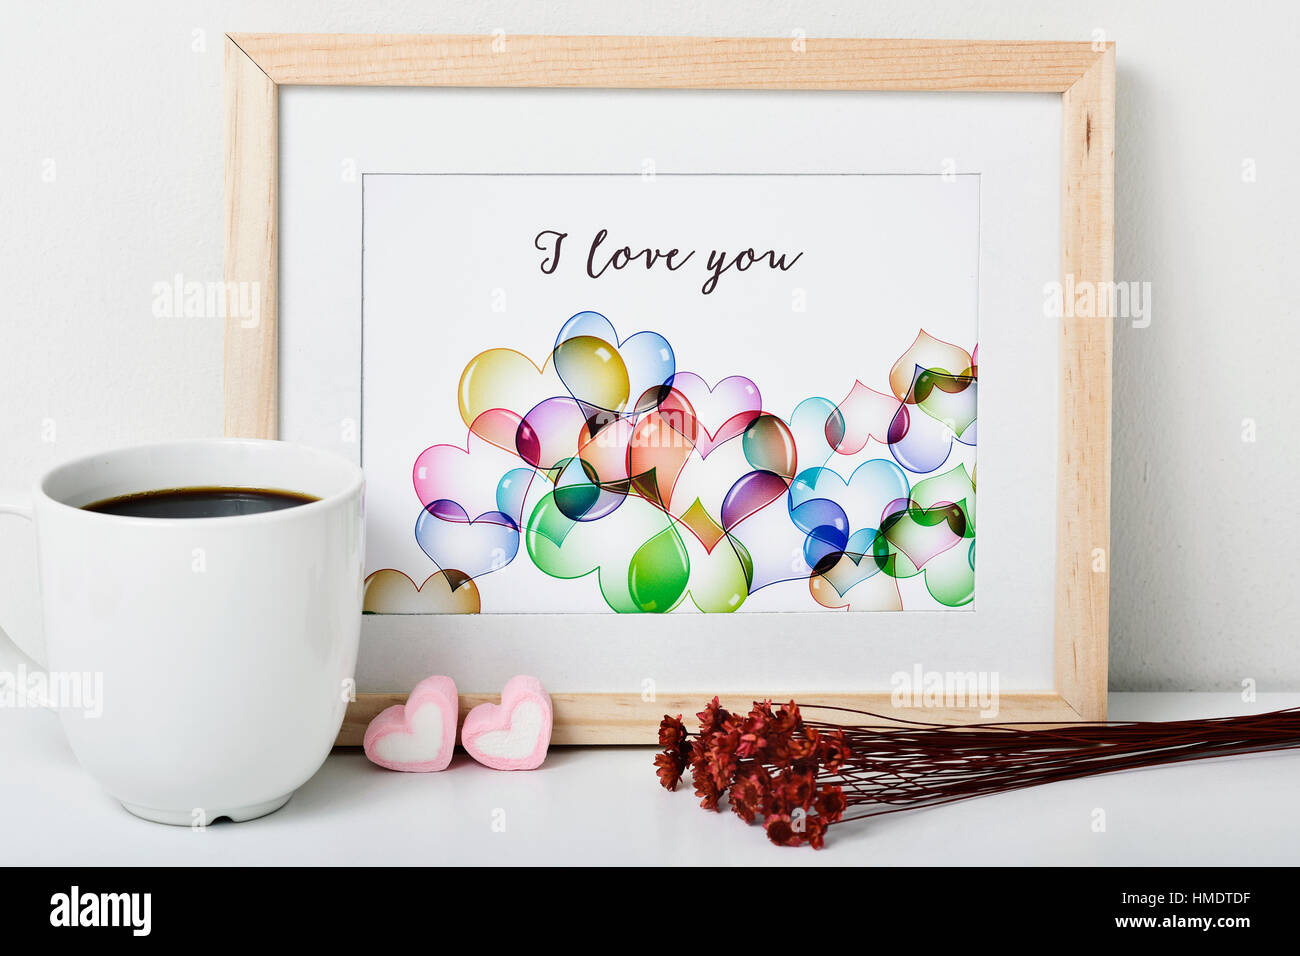 ein Holz-gerahmte Bild mit einer Illustration von mir, mit einige Herzen und den Text ich liebe dich, eine Tasse Kaffee, einige herzförmige Marshmallow gemacht Stockfoto